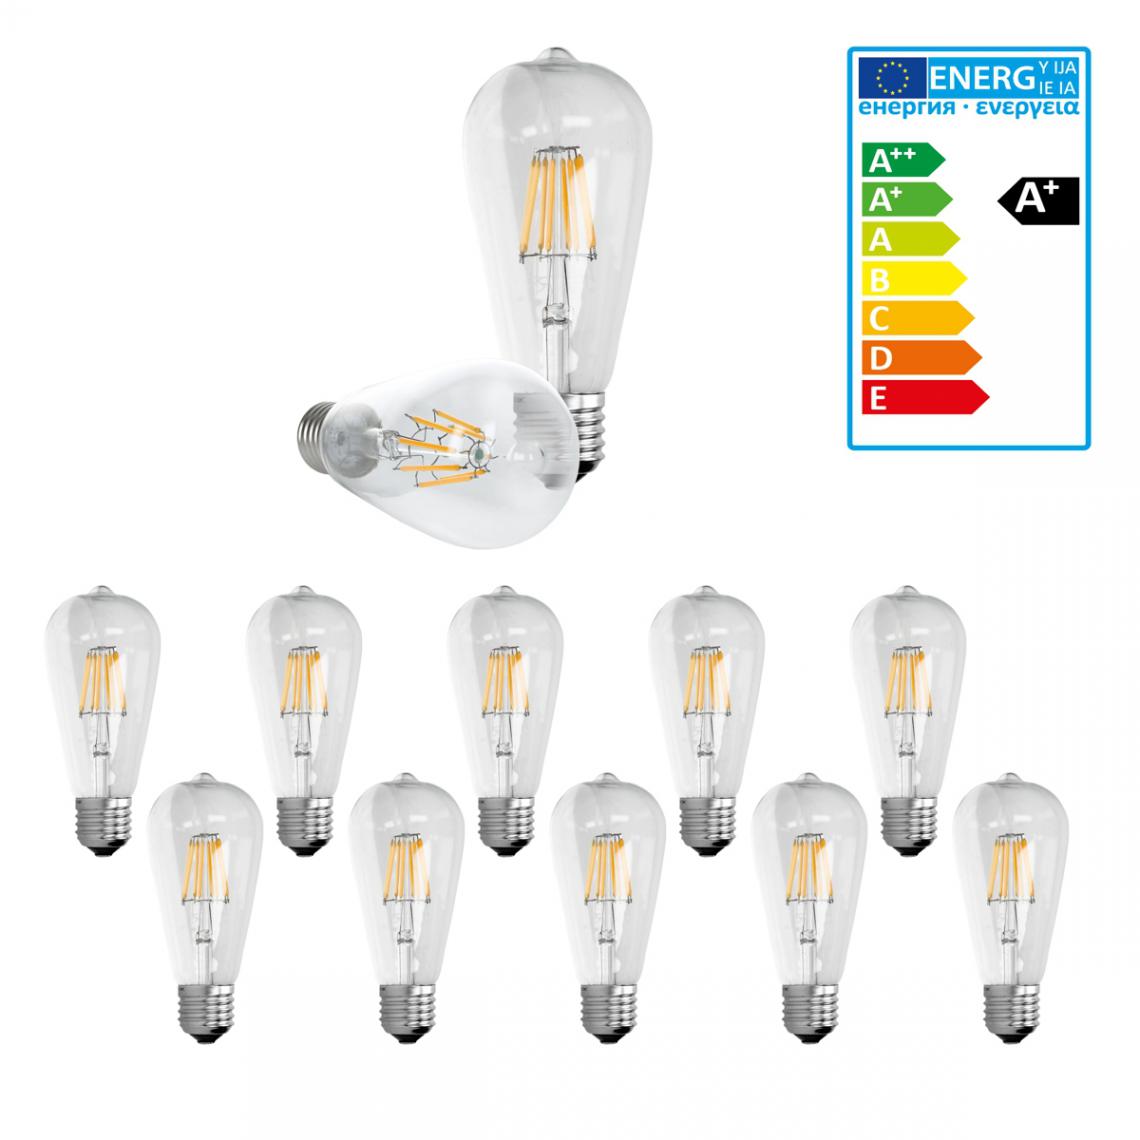 Ecd Germany - ECD Germany 10 x LED Filament de l'ampoule E27 Classique Edison 8W 816 lumens angle de faisceau 120 ° AC 220-240 reste caché et remplace 45W Ampoule de Lampe incandescent Blanc Chaud - Ampoules LED